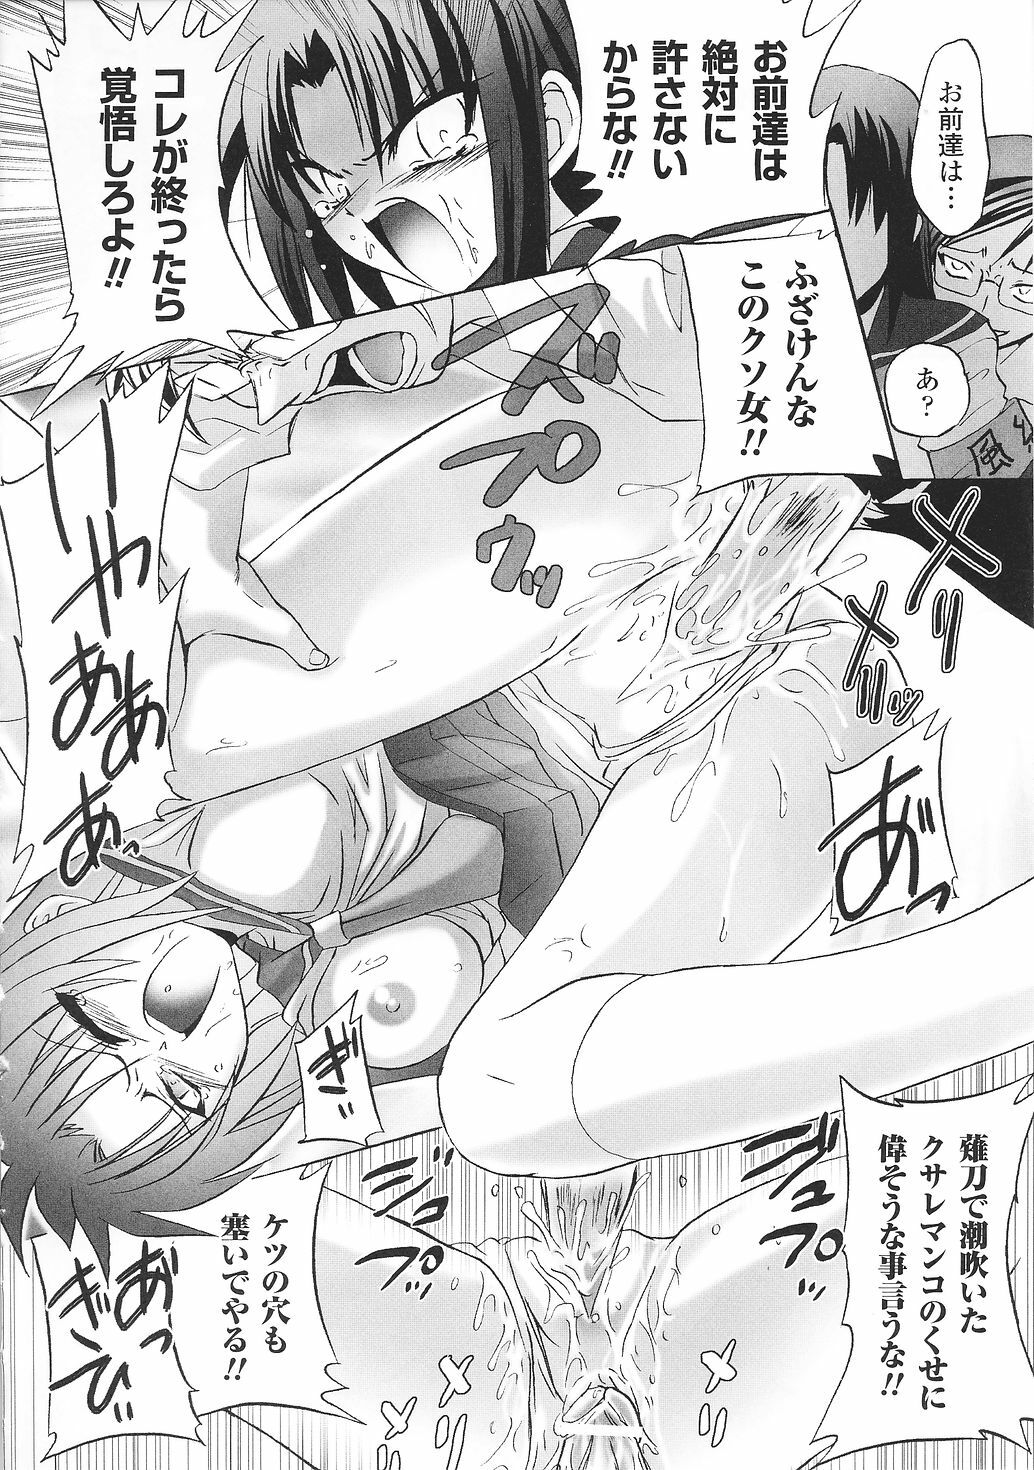 [Anthology] Tatakau Heroine Ryoujoku Anthology Toukiryoujoku 30 page 50 full